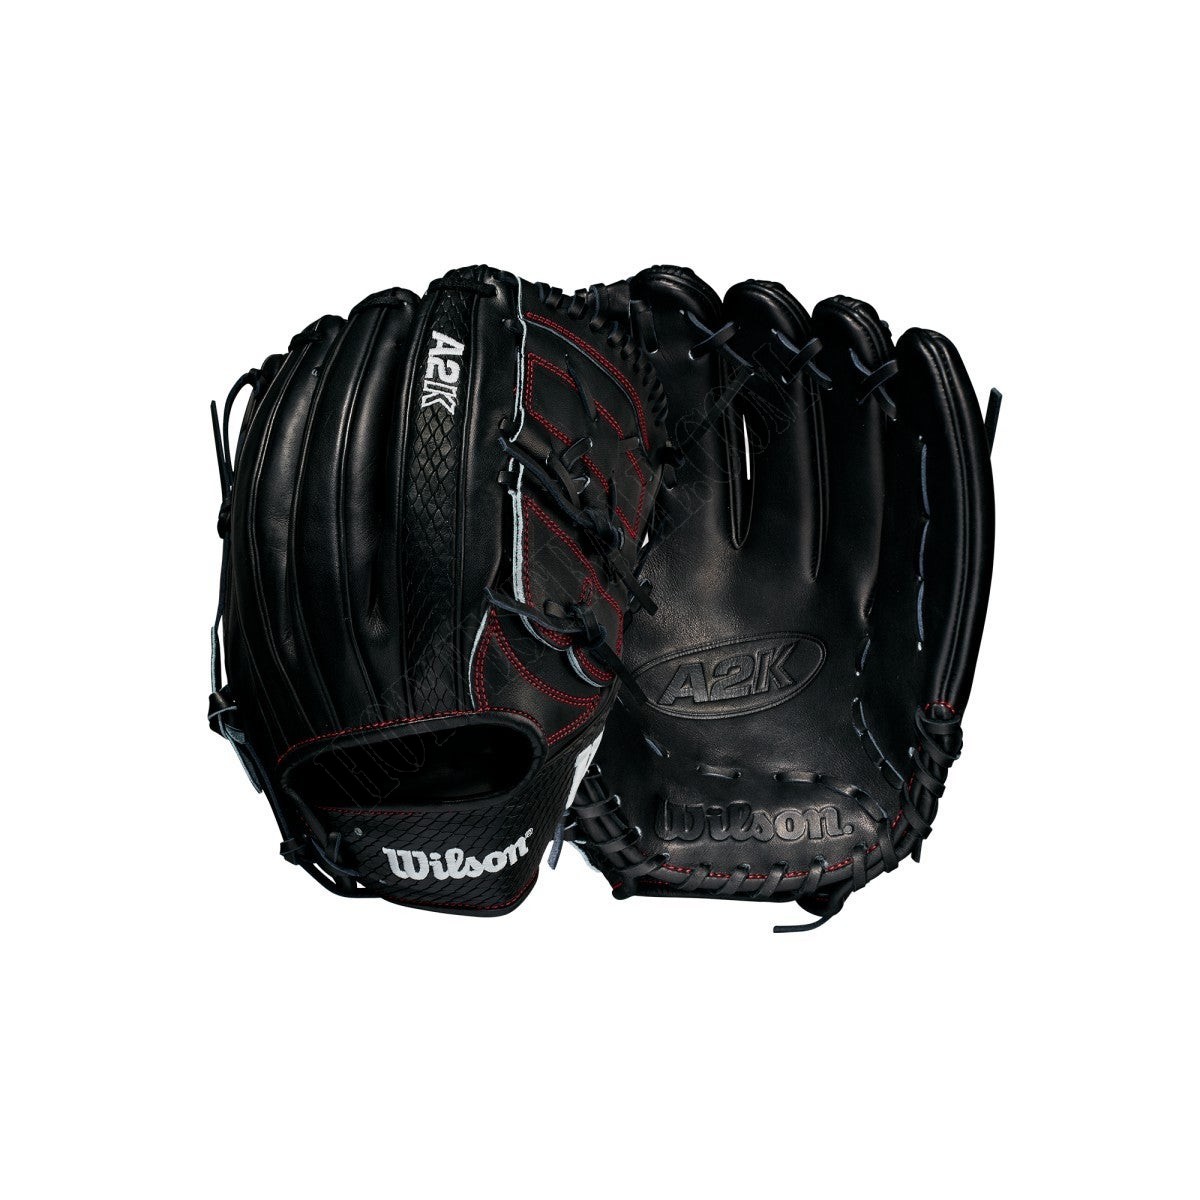 2021 A2K B2 12" Pitcher's Baseball Glove ● Wilson Promotions - 2021 A2K B2 12" Pitcher's Baseball Glove ● Wilson Promotions